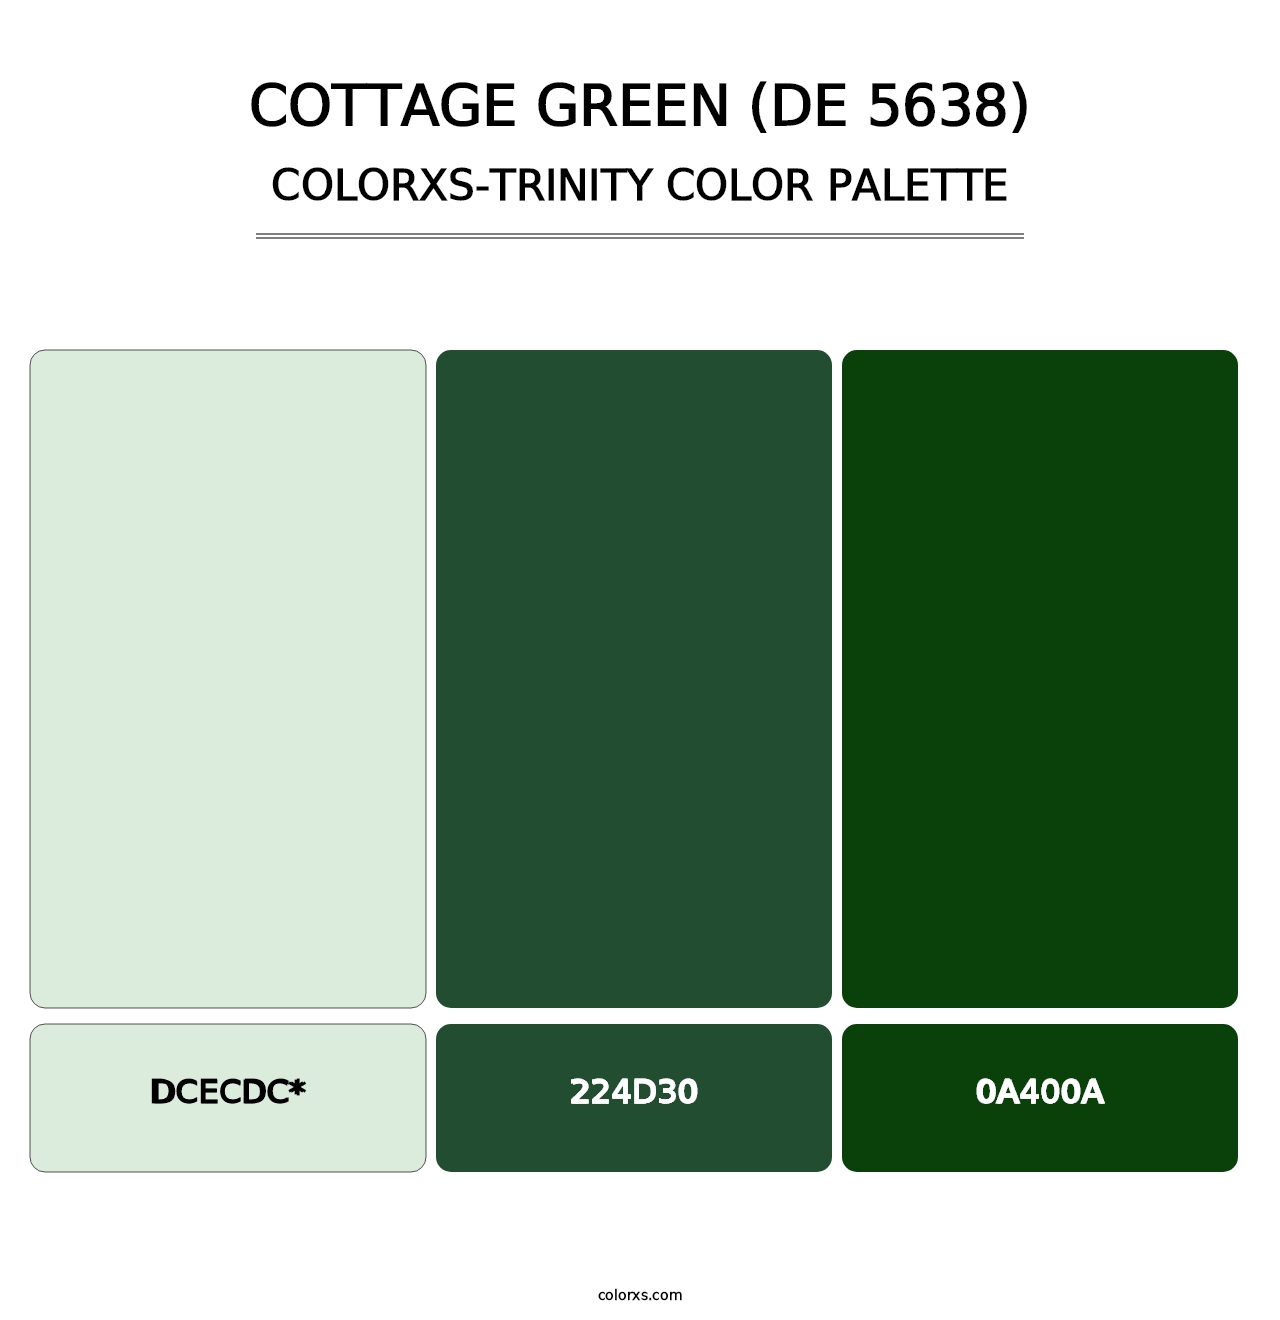 Cottage Green (DE 5638) - Colorxs Trinity Palette